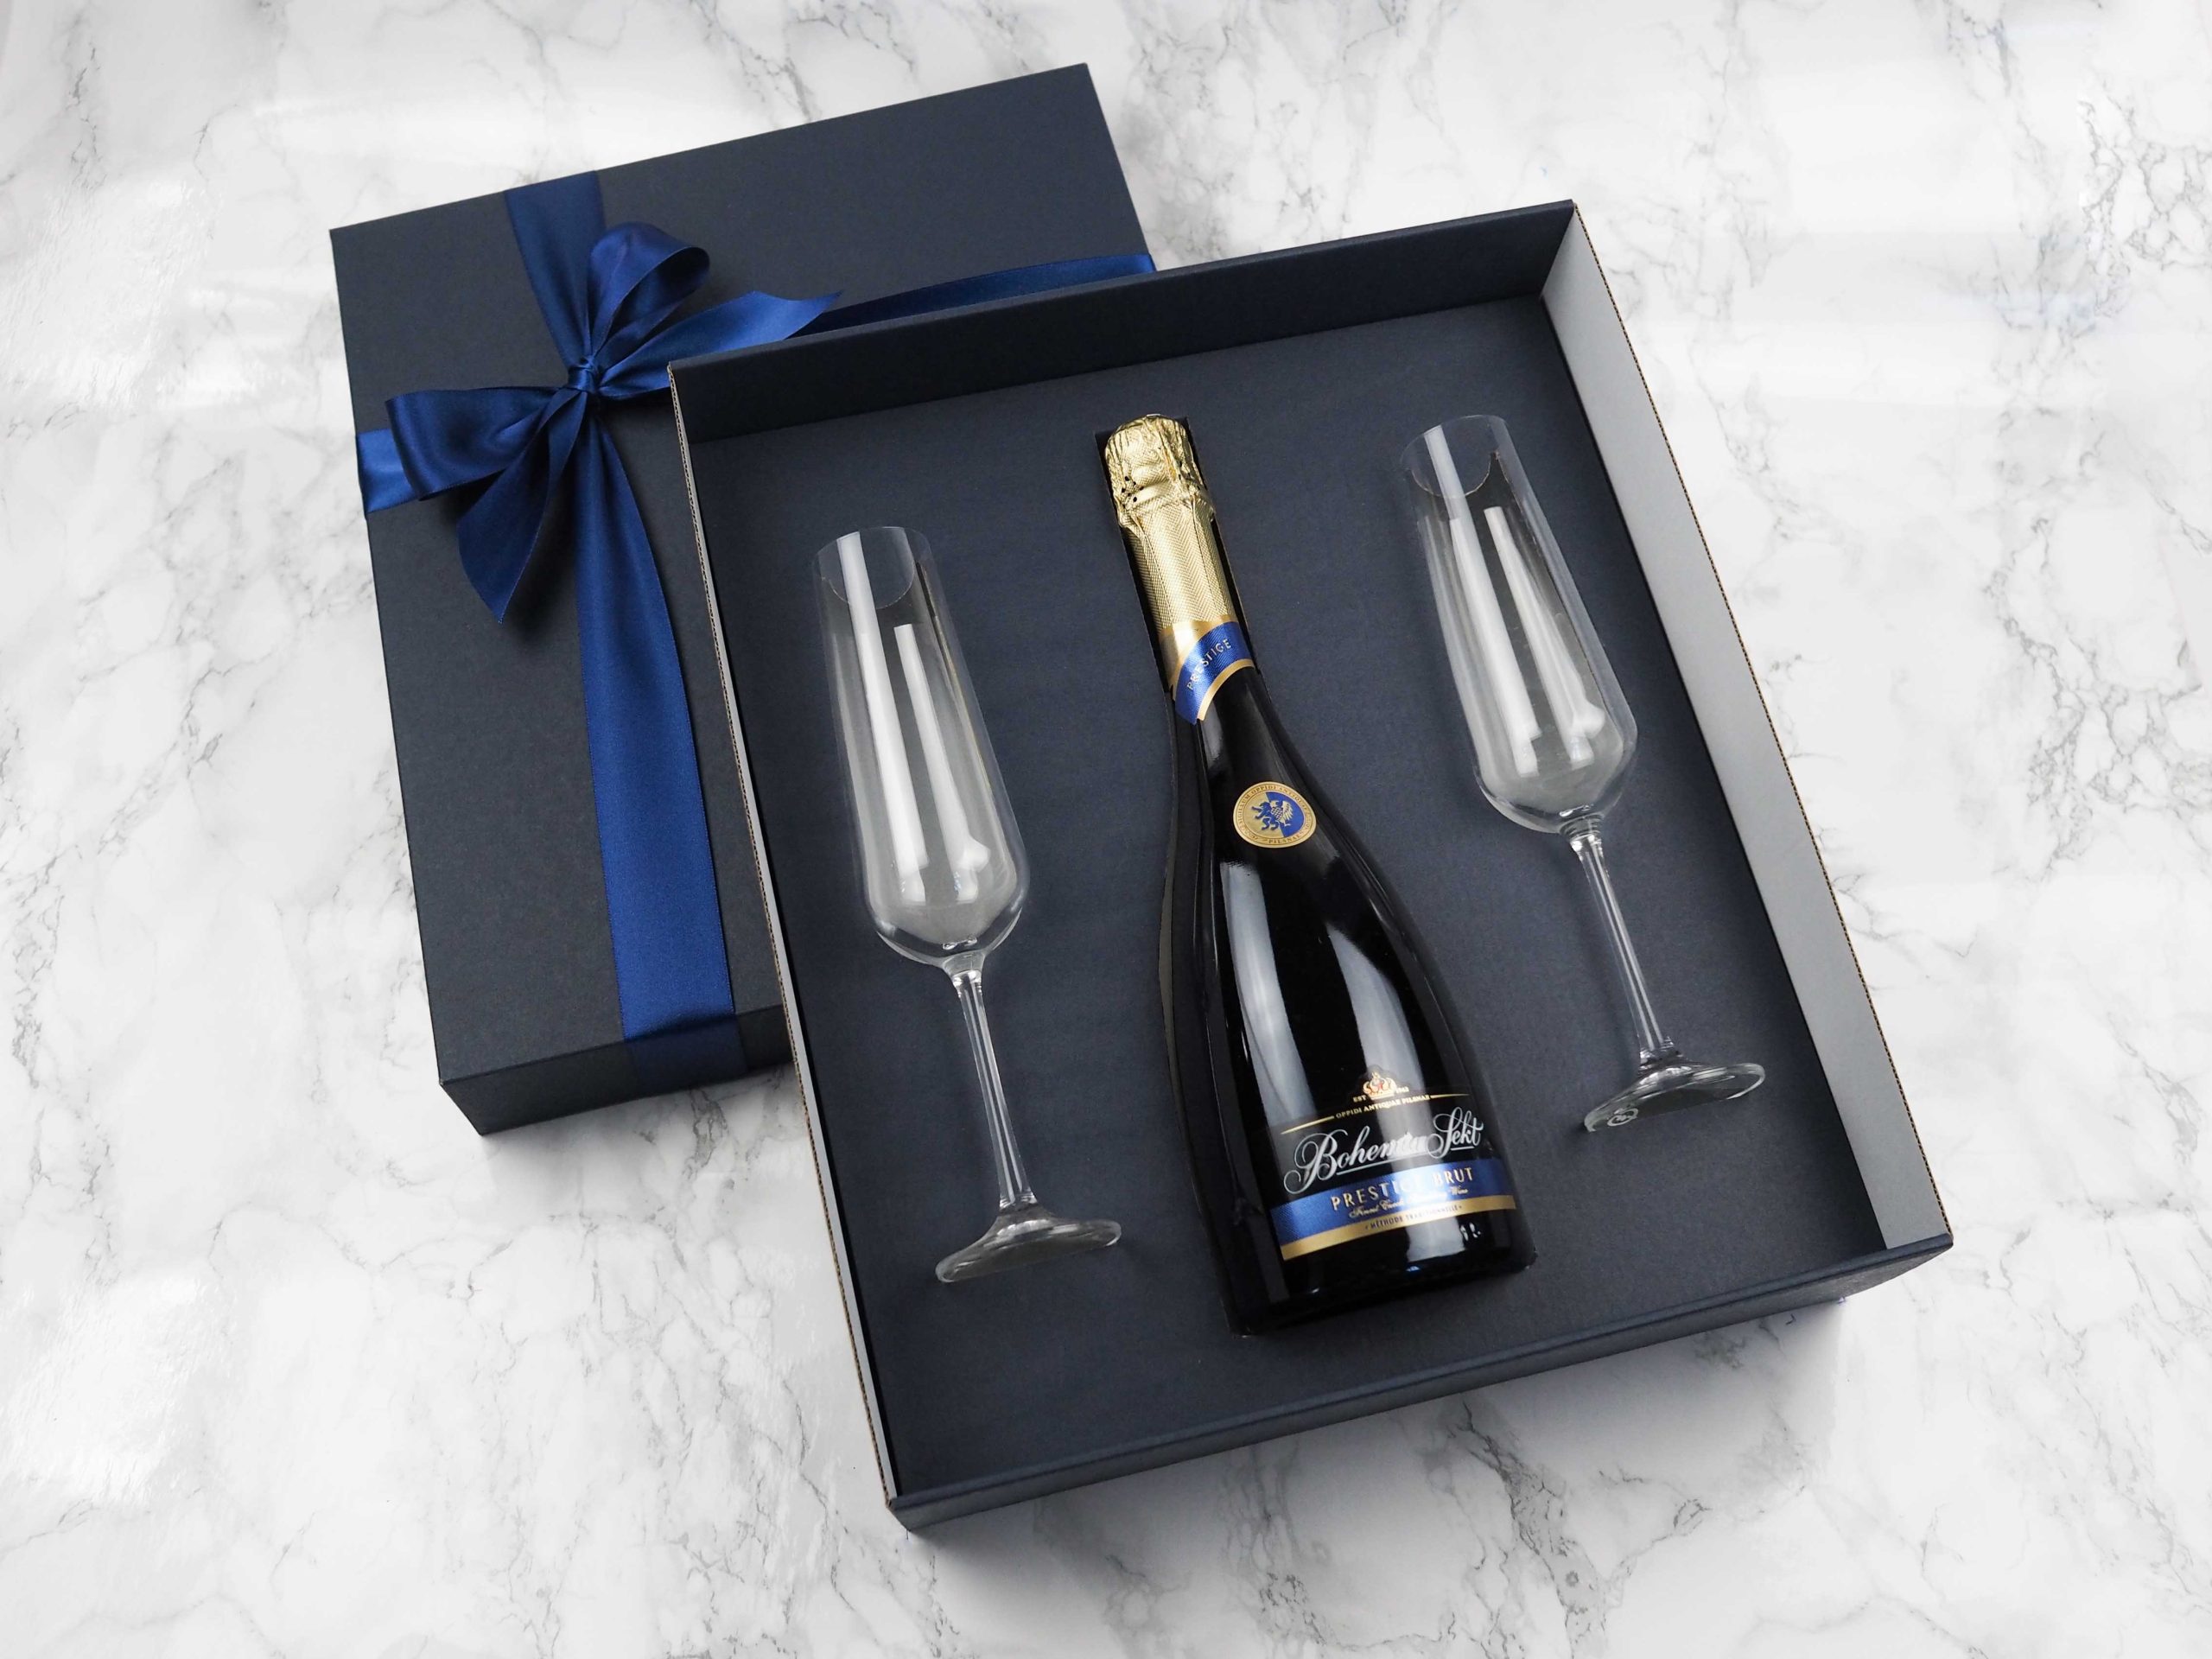 Dárkový balíček Exclusive Sekt v sobě obsahuje Bohemia Sekt Prestige a dvě skleničky na šampaňské, na které lze přidat i gravírování loga.  Darujte luxusní balíček, který potěší každého obdarovaného.